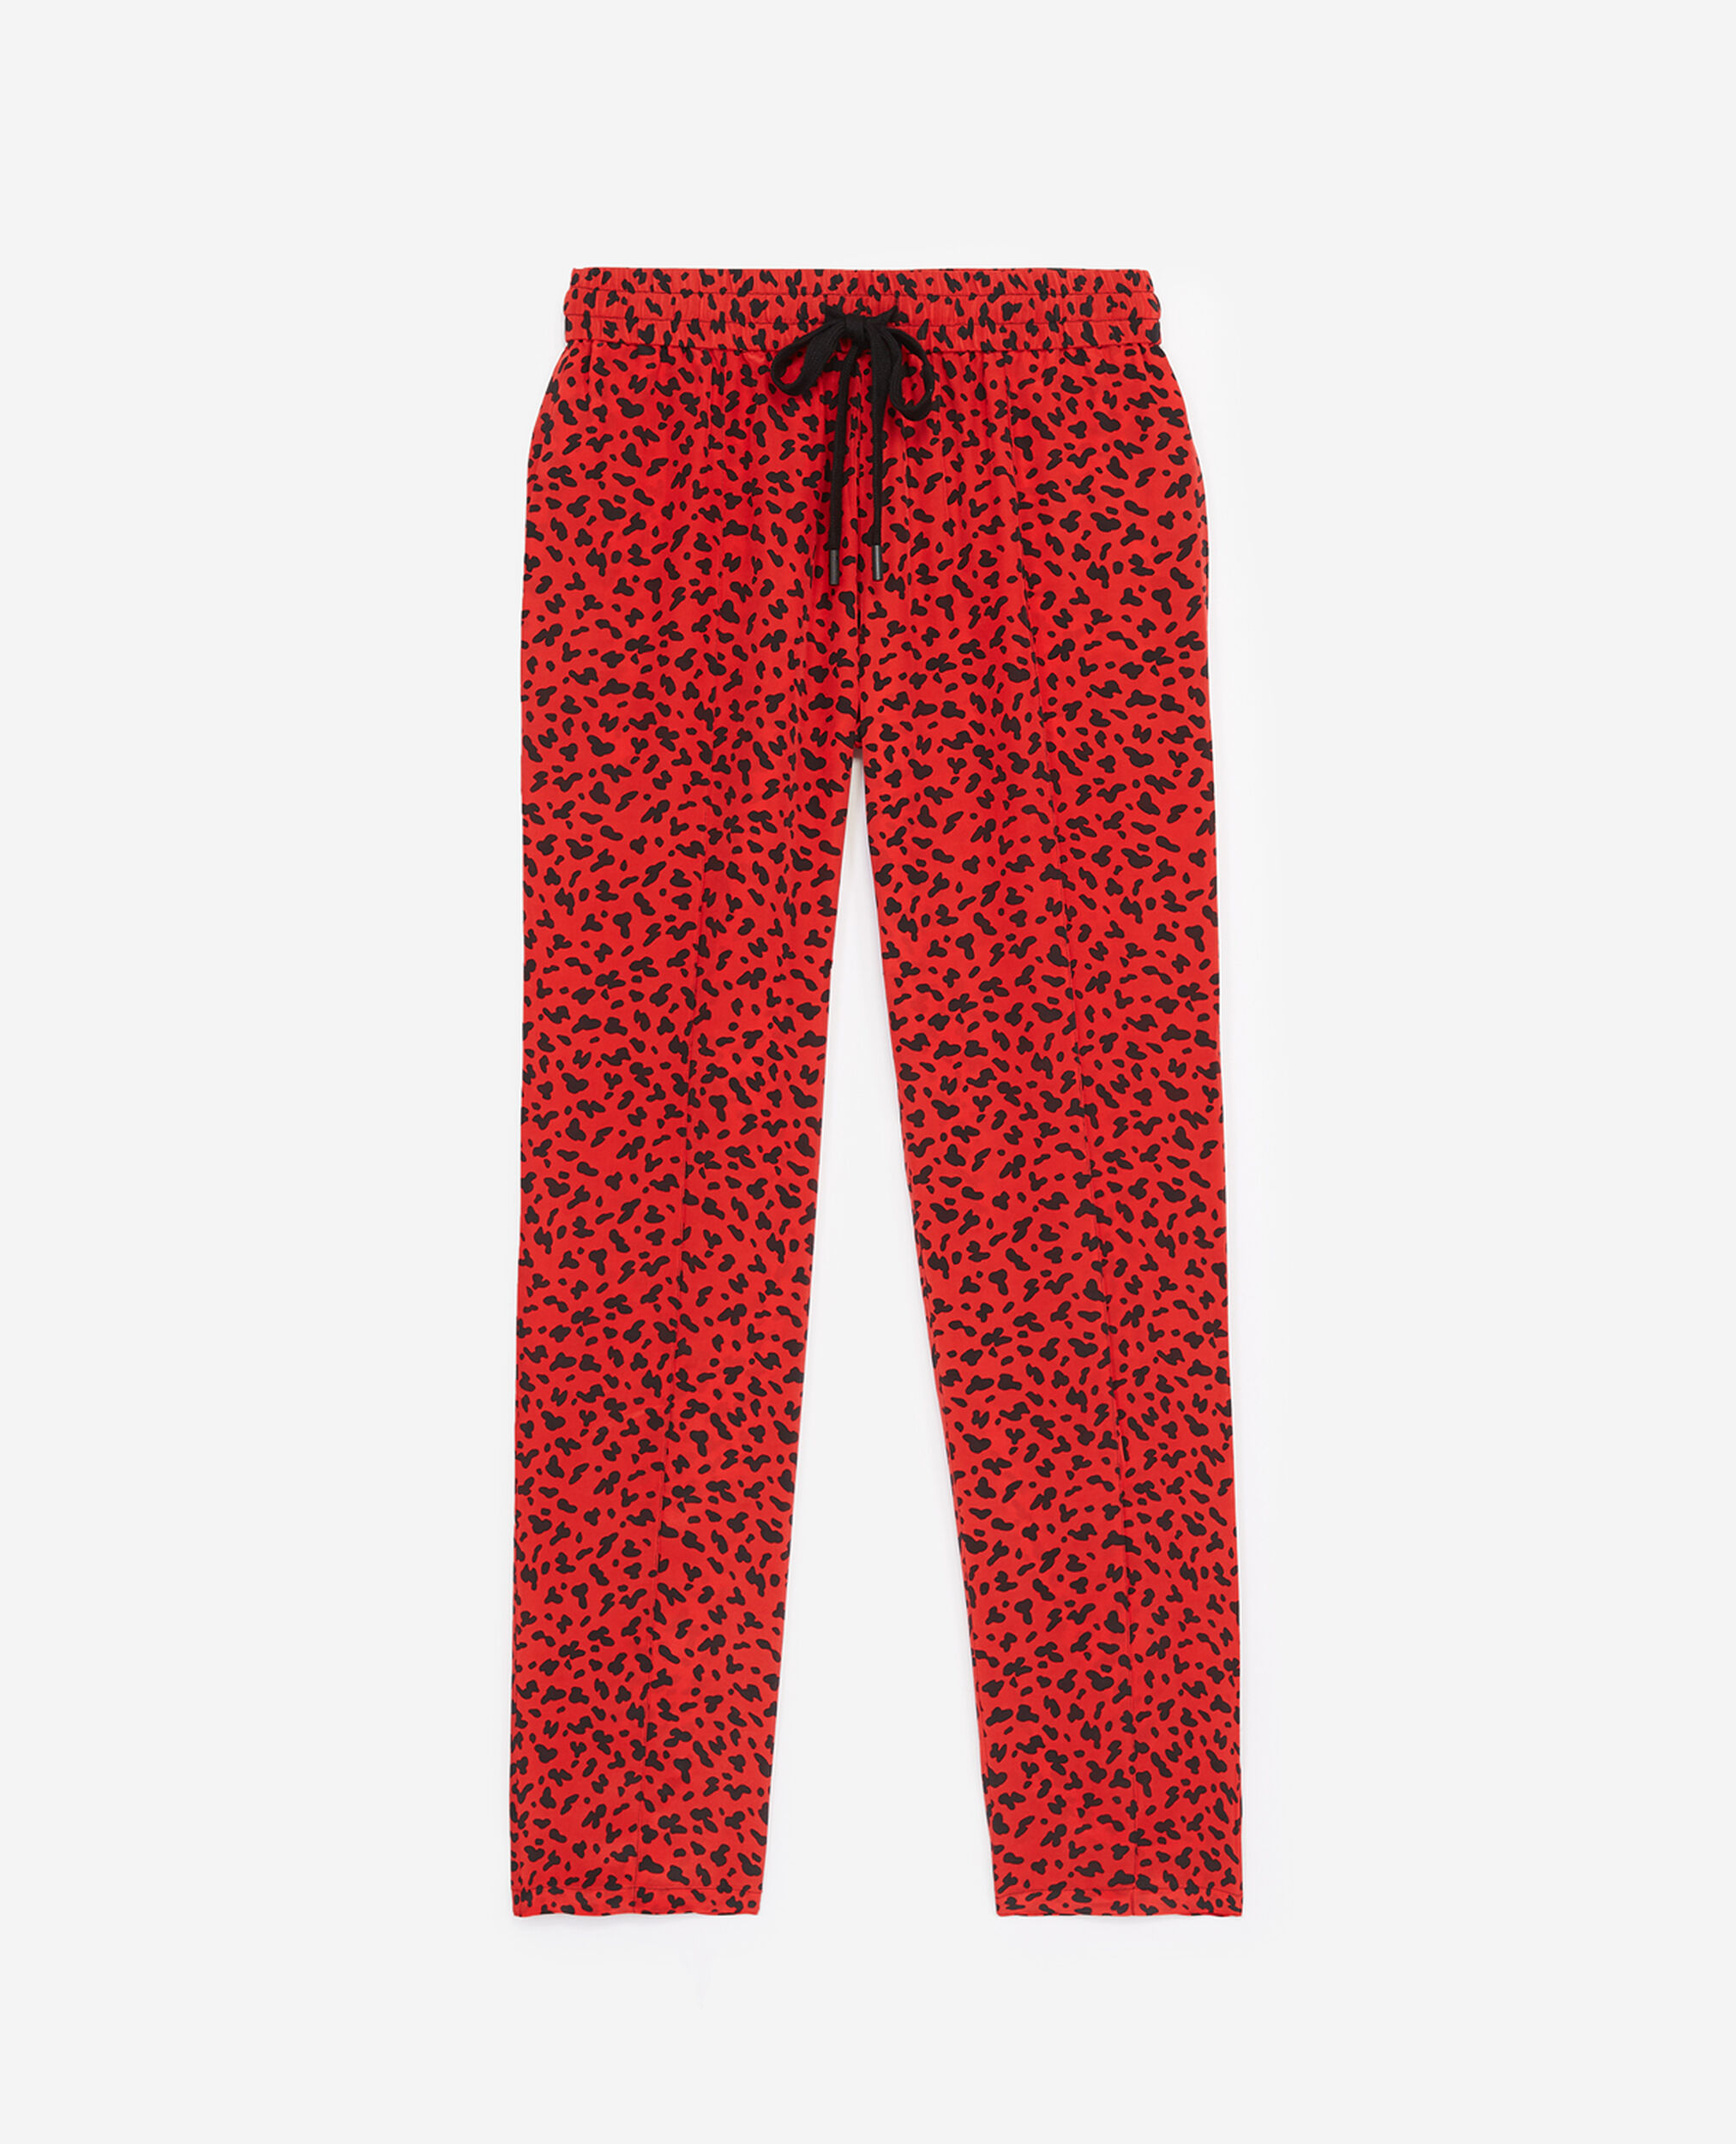 Pantalones fluidos rojos de seda con estampado leopardo | The Kooples